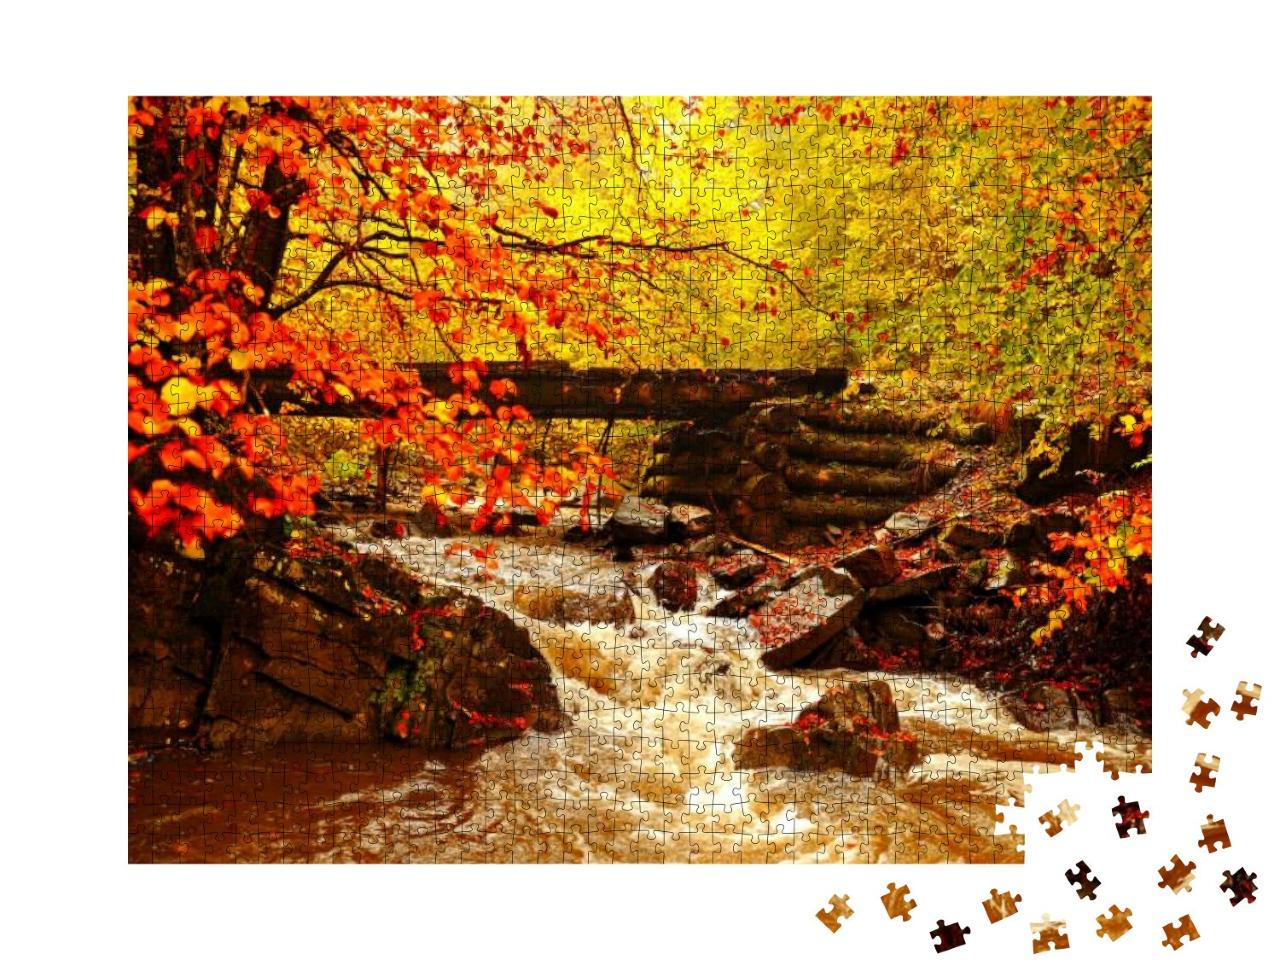 Autumn Landscape... Jigsaw Puzzle with 1000 pieces